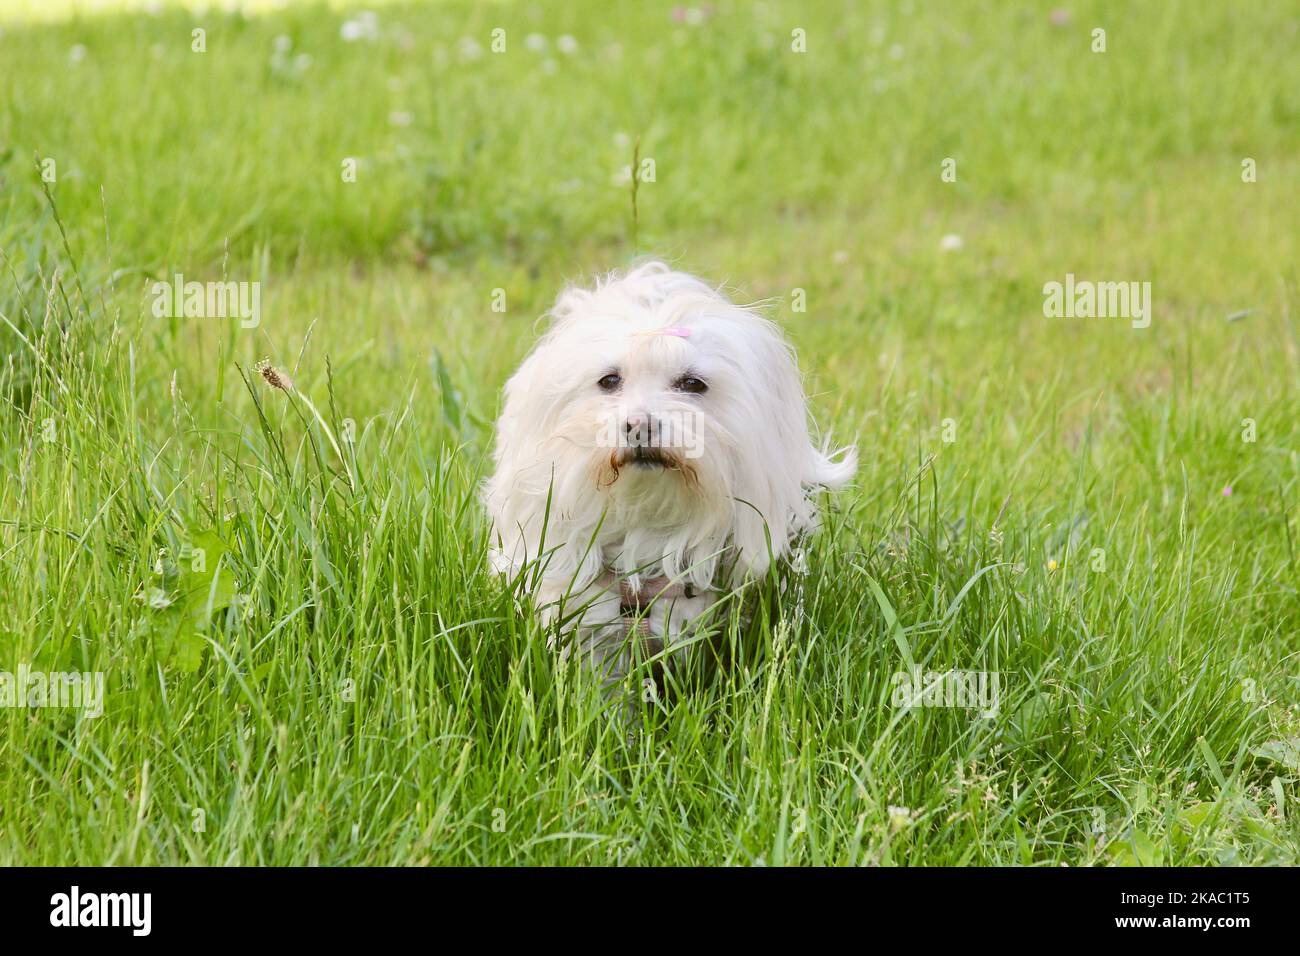 Weißer Hund mit Haarspange im hohen Gras Stock Photo